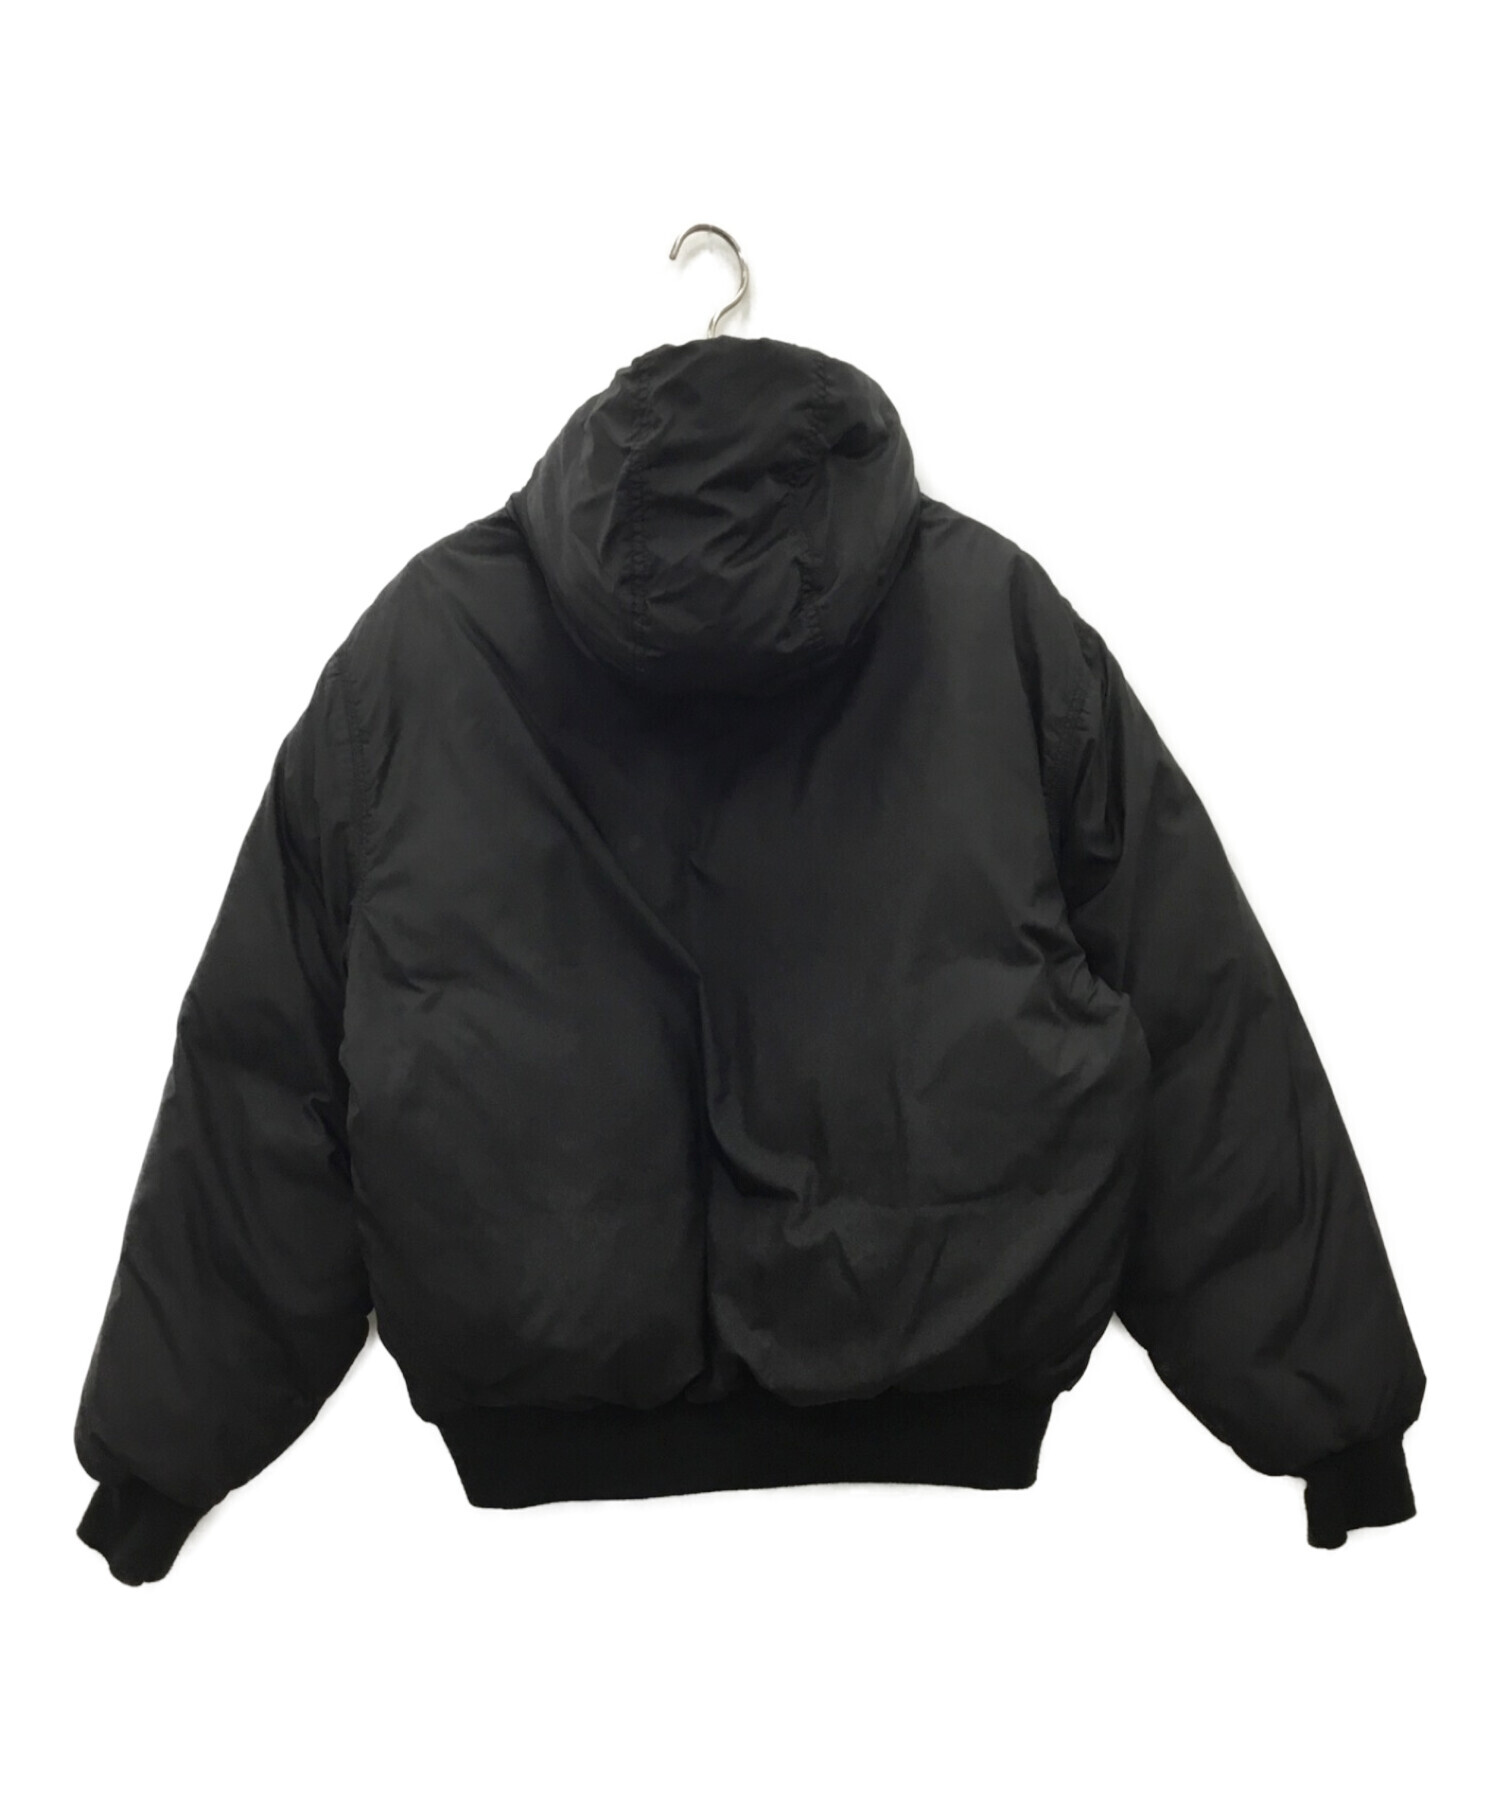 POLO RALPH LAUREN (ポロ・ラルフローレン) ダウンジャケット ブラック サイズ:XL